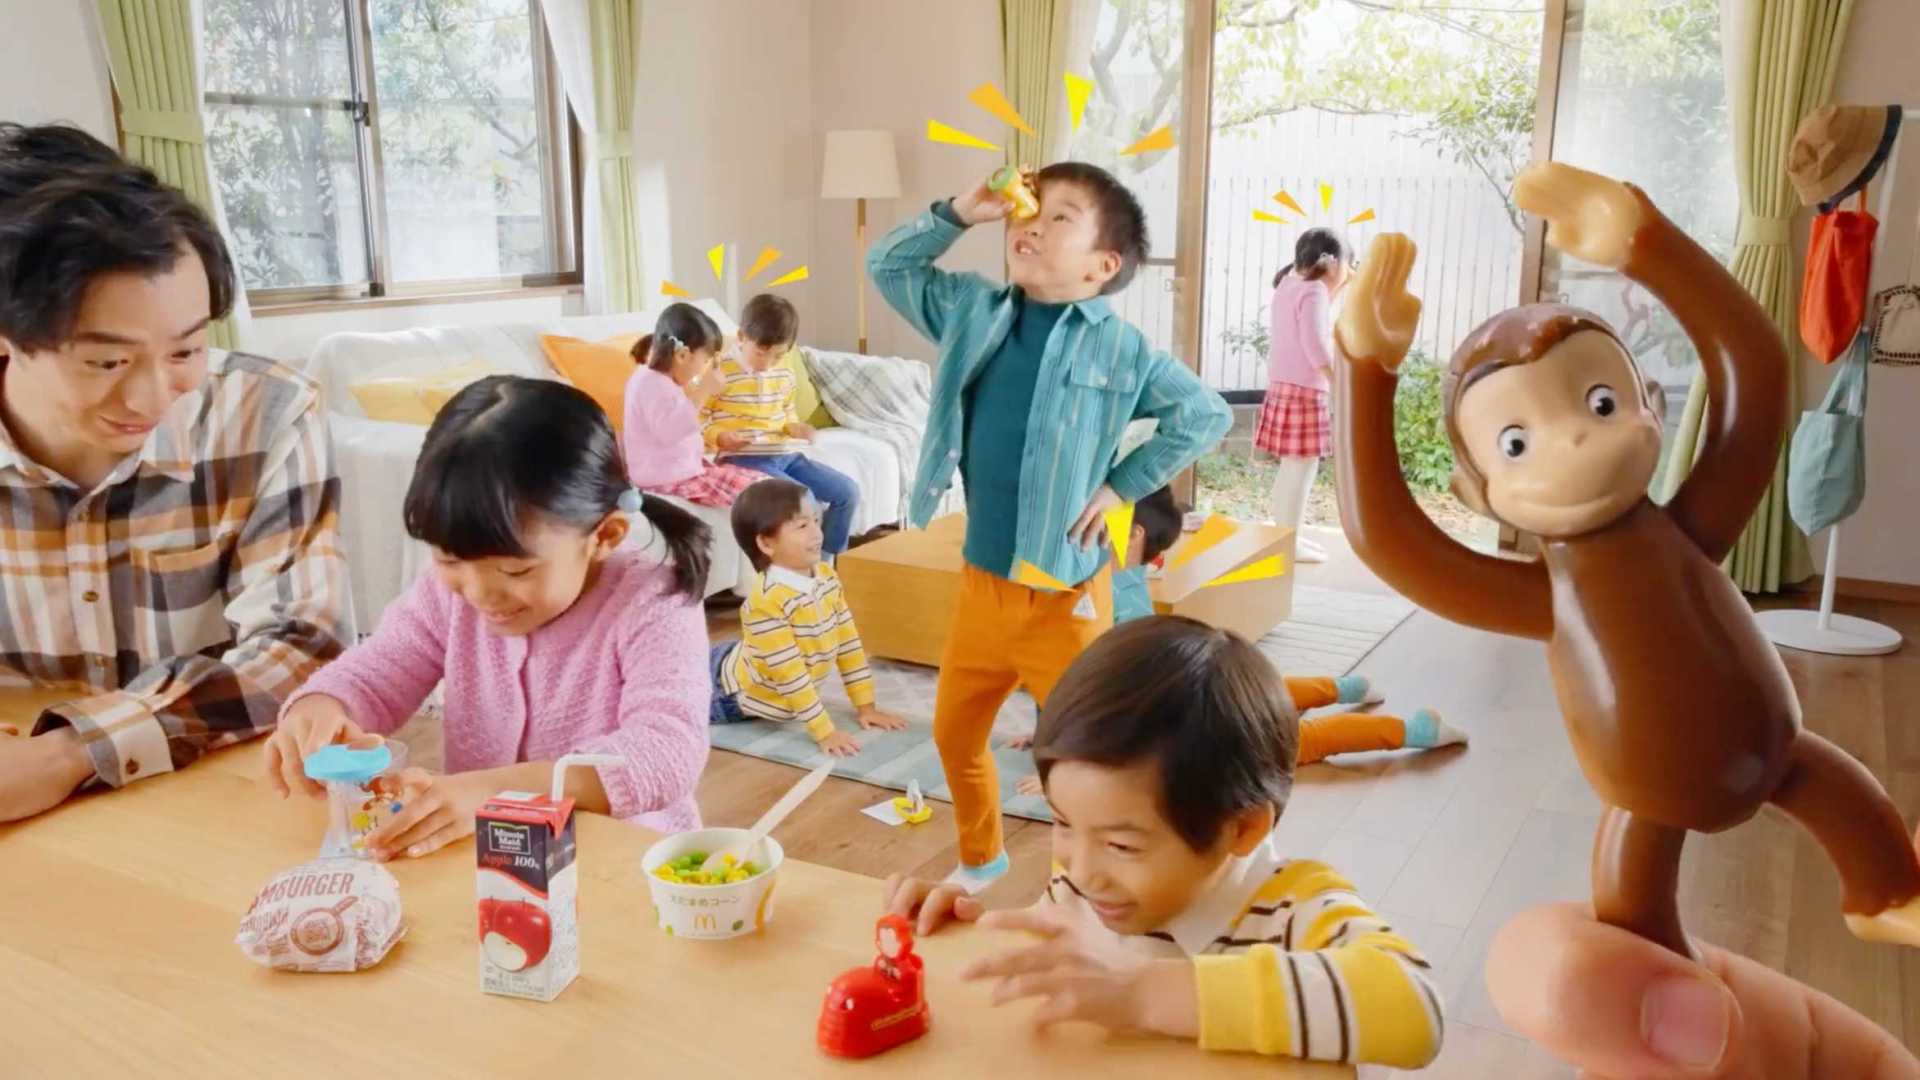 日本麦当劳新品快乐套餐玩具《大猩猩乔治》宣传广告